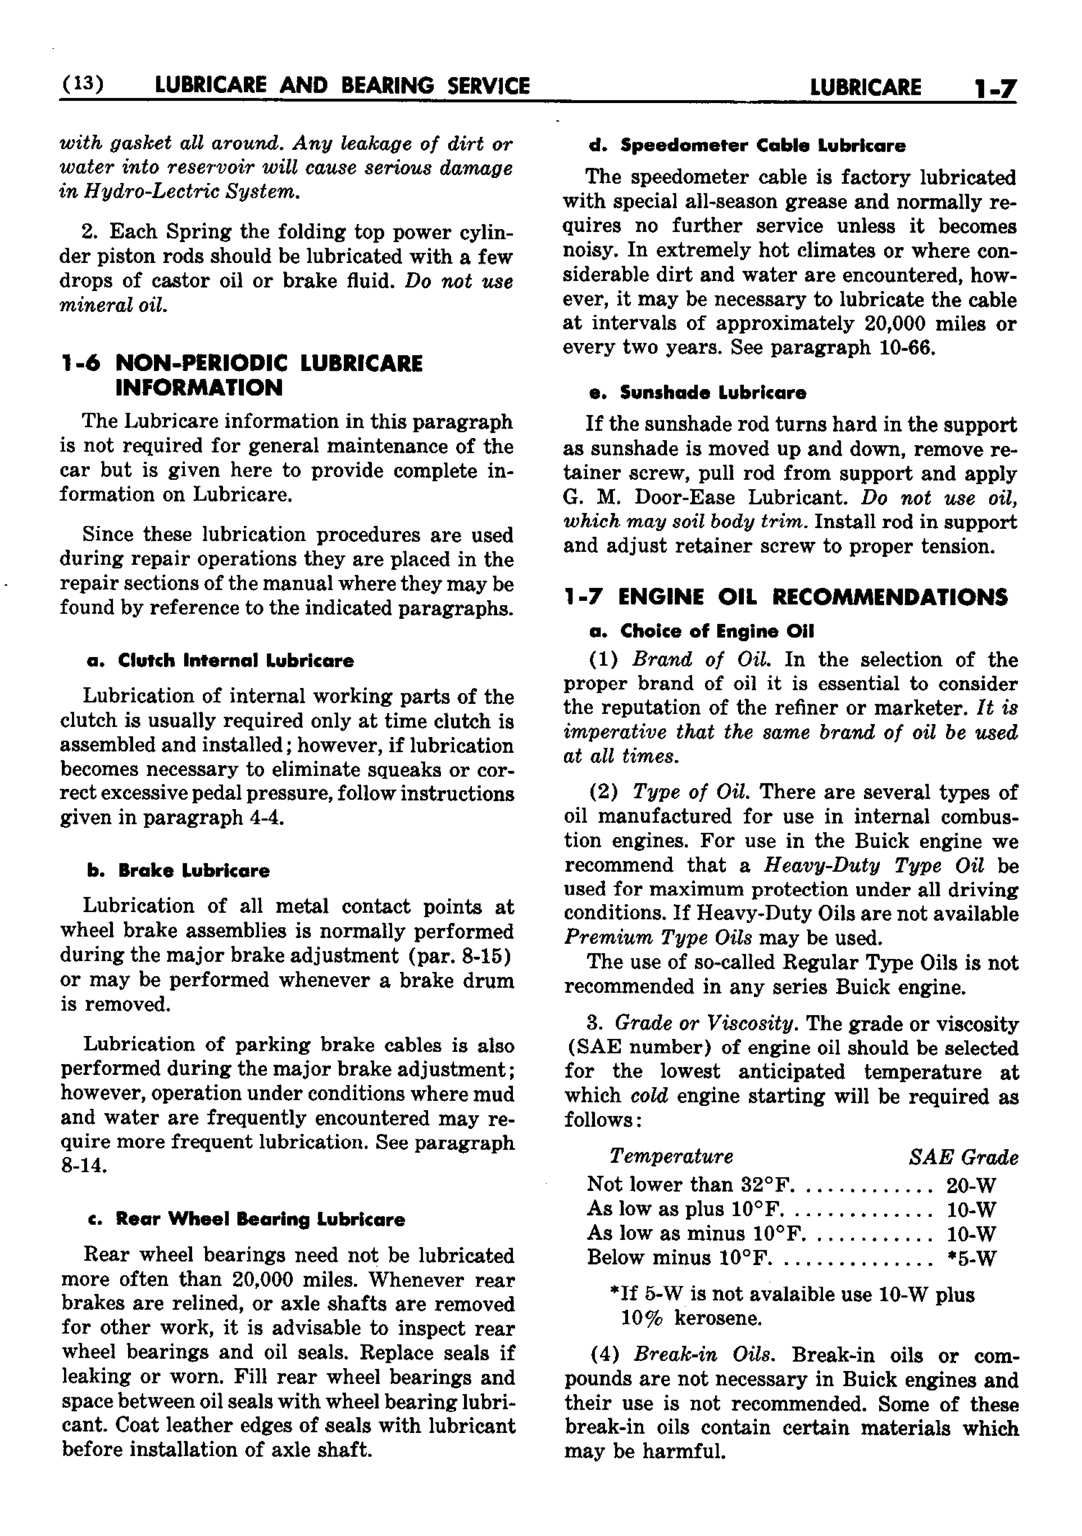 n_02 1952 Buick Shop Manual - Lubricare-007-007.jpg